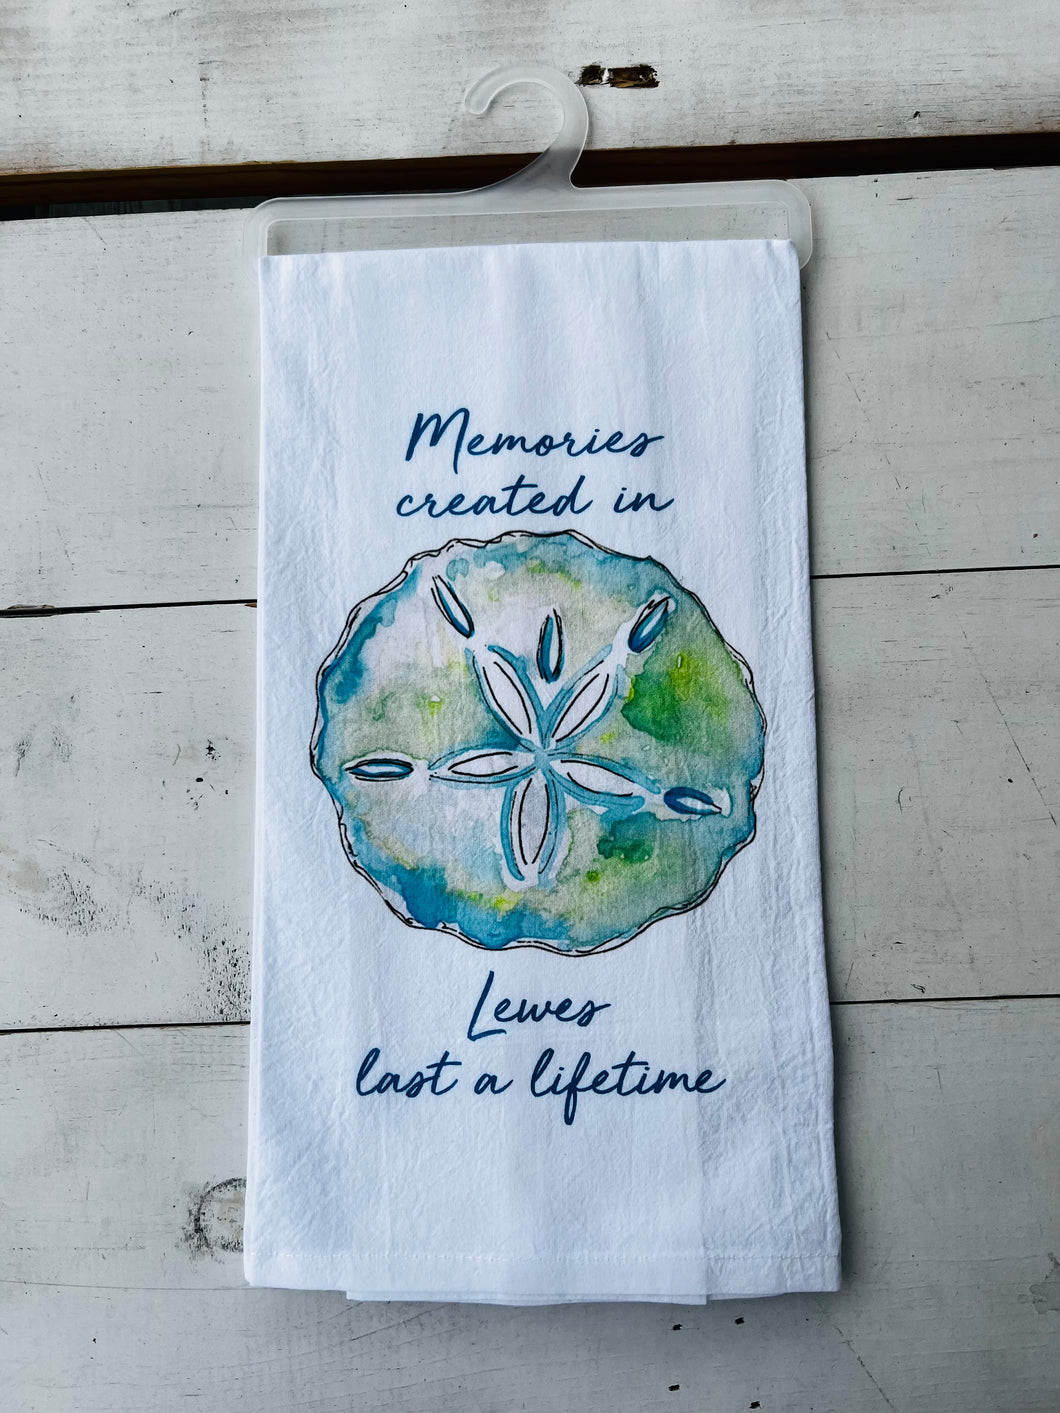 MEMORIES CREATED TOWEL LEWES